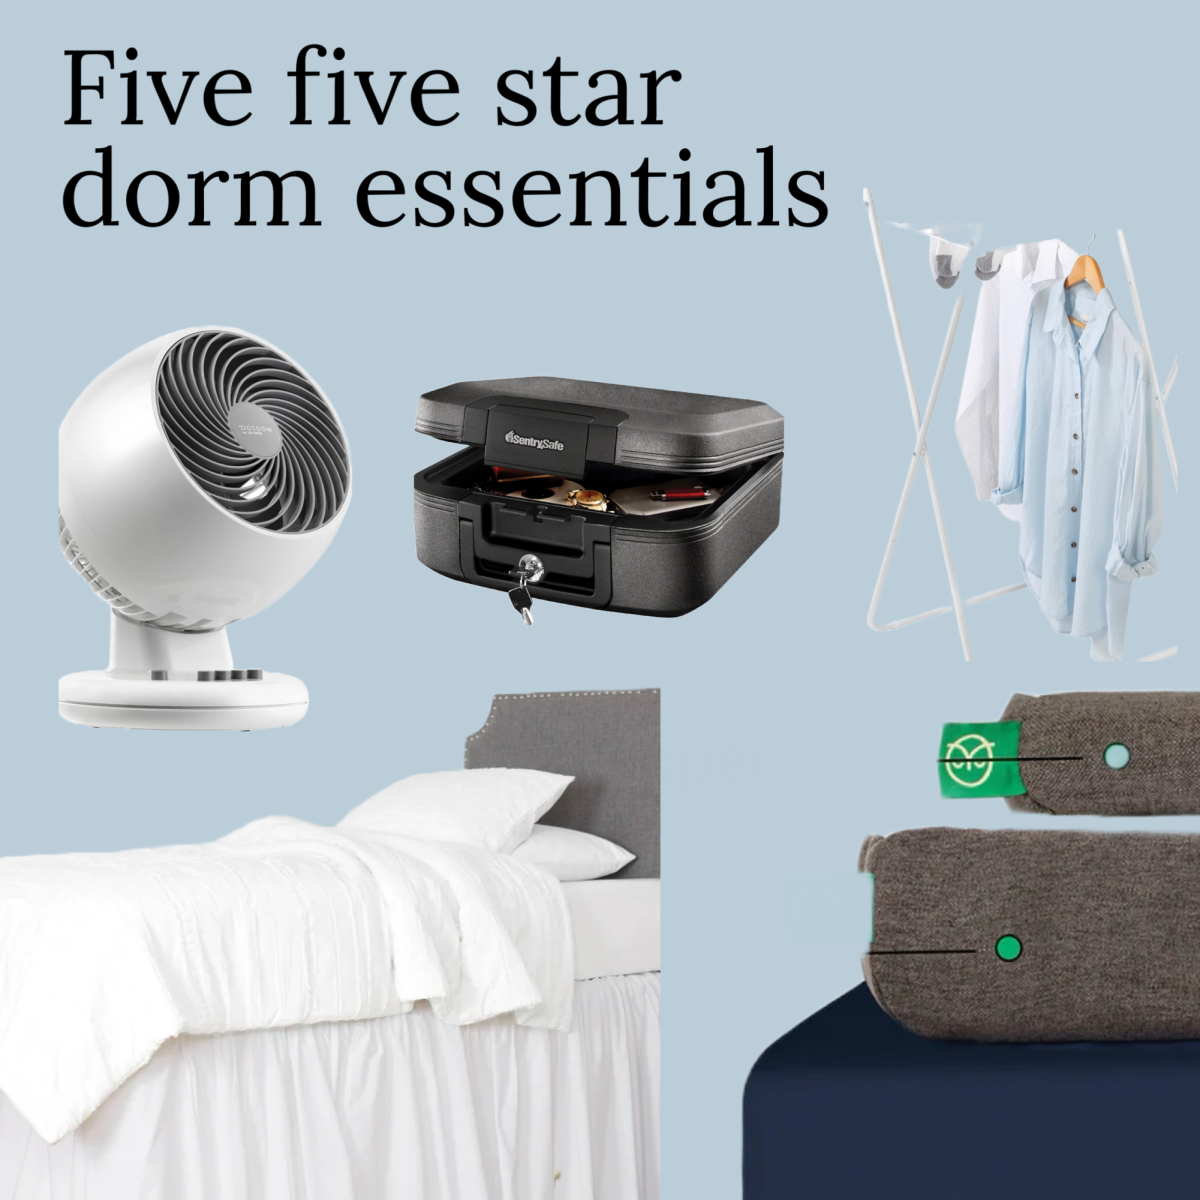 Five, five star dorm essentials